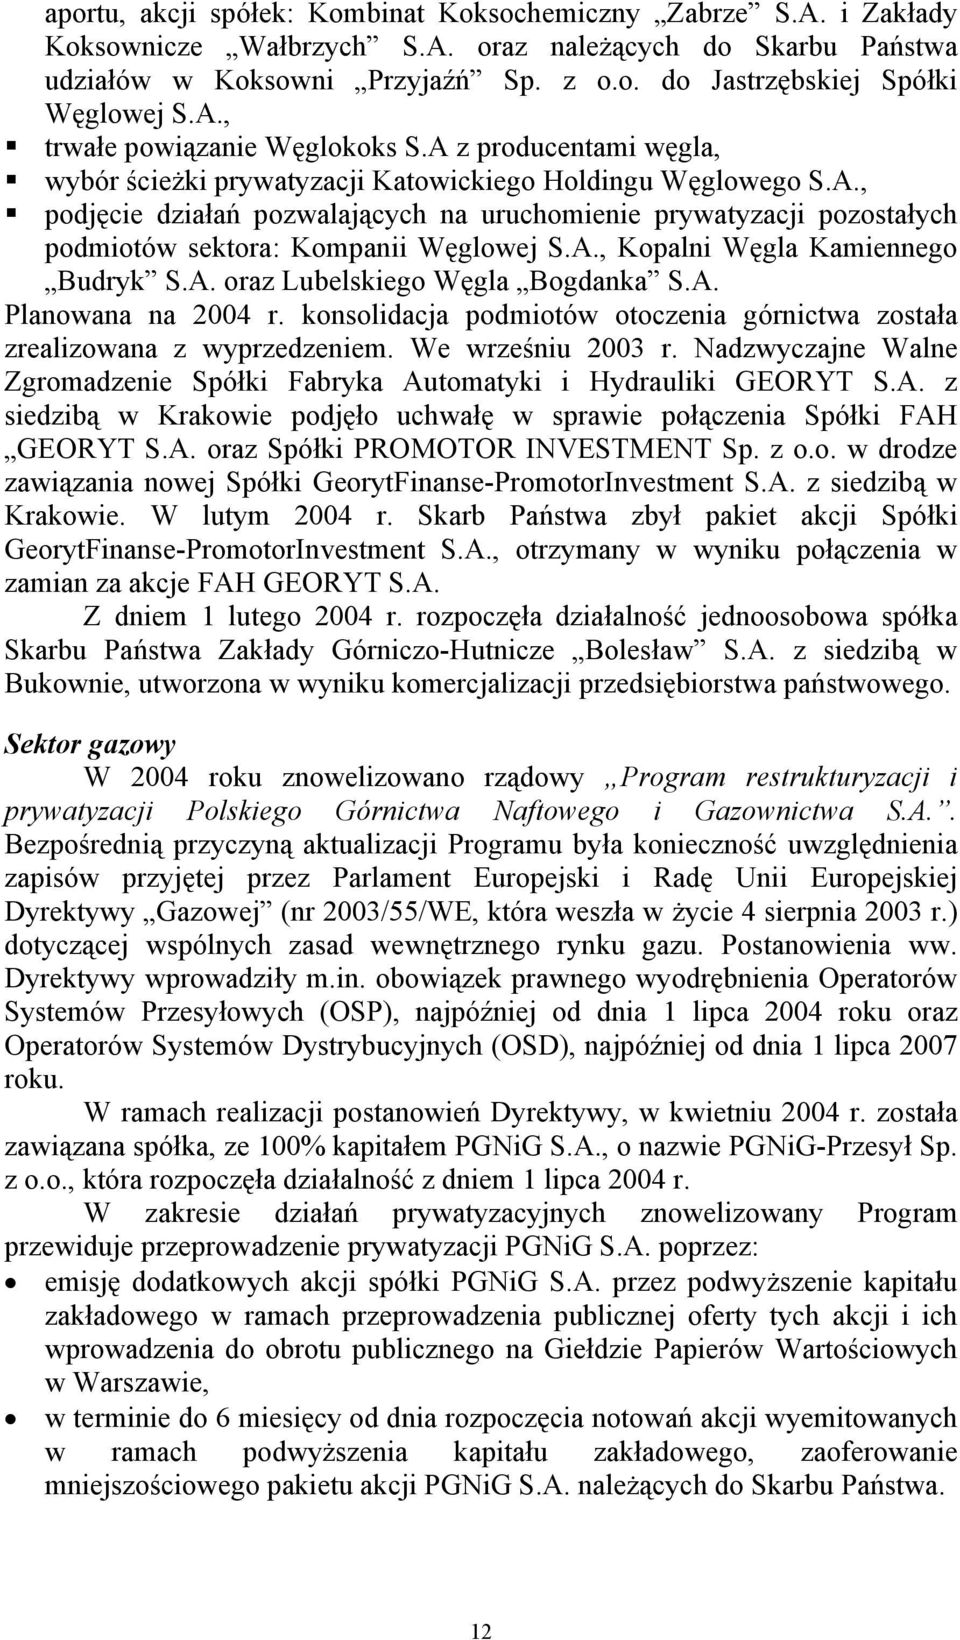 A., Kopalni Węgla Kamiennego Budryk S.A. oraz Lubelskiego Węgla Bogdanka S.A. Planowana na 2004 r. konsolidacja podmiotów otoczenia górnictwa została zrealizowana z wyprzedzeniem. We wrześniu 2003 r.